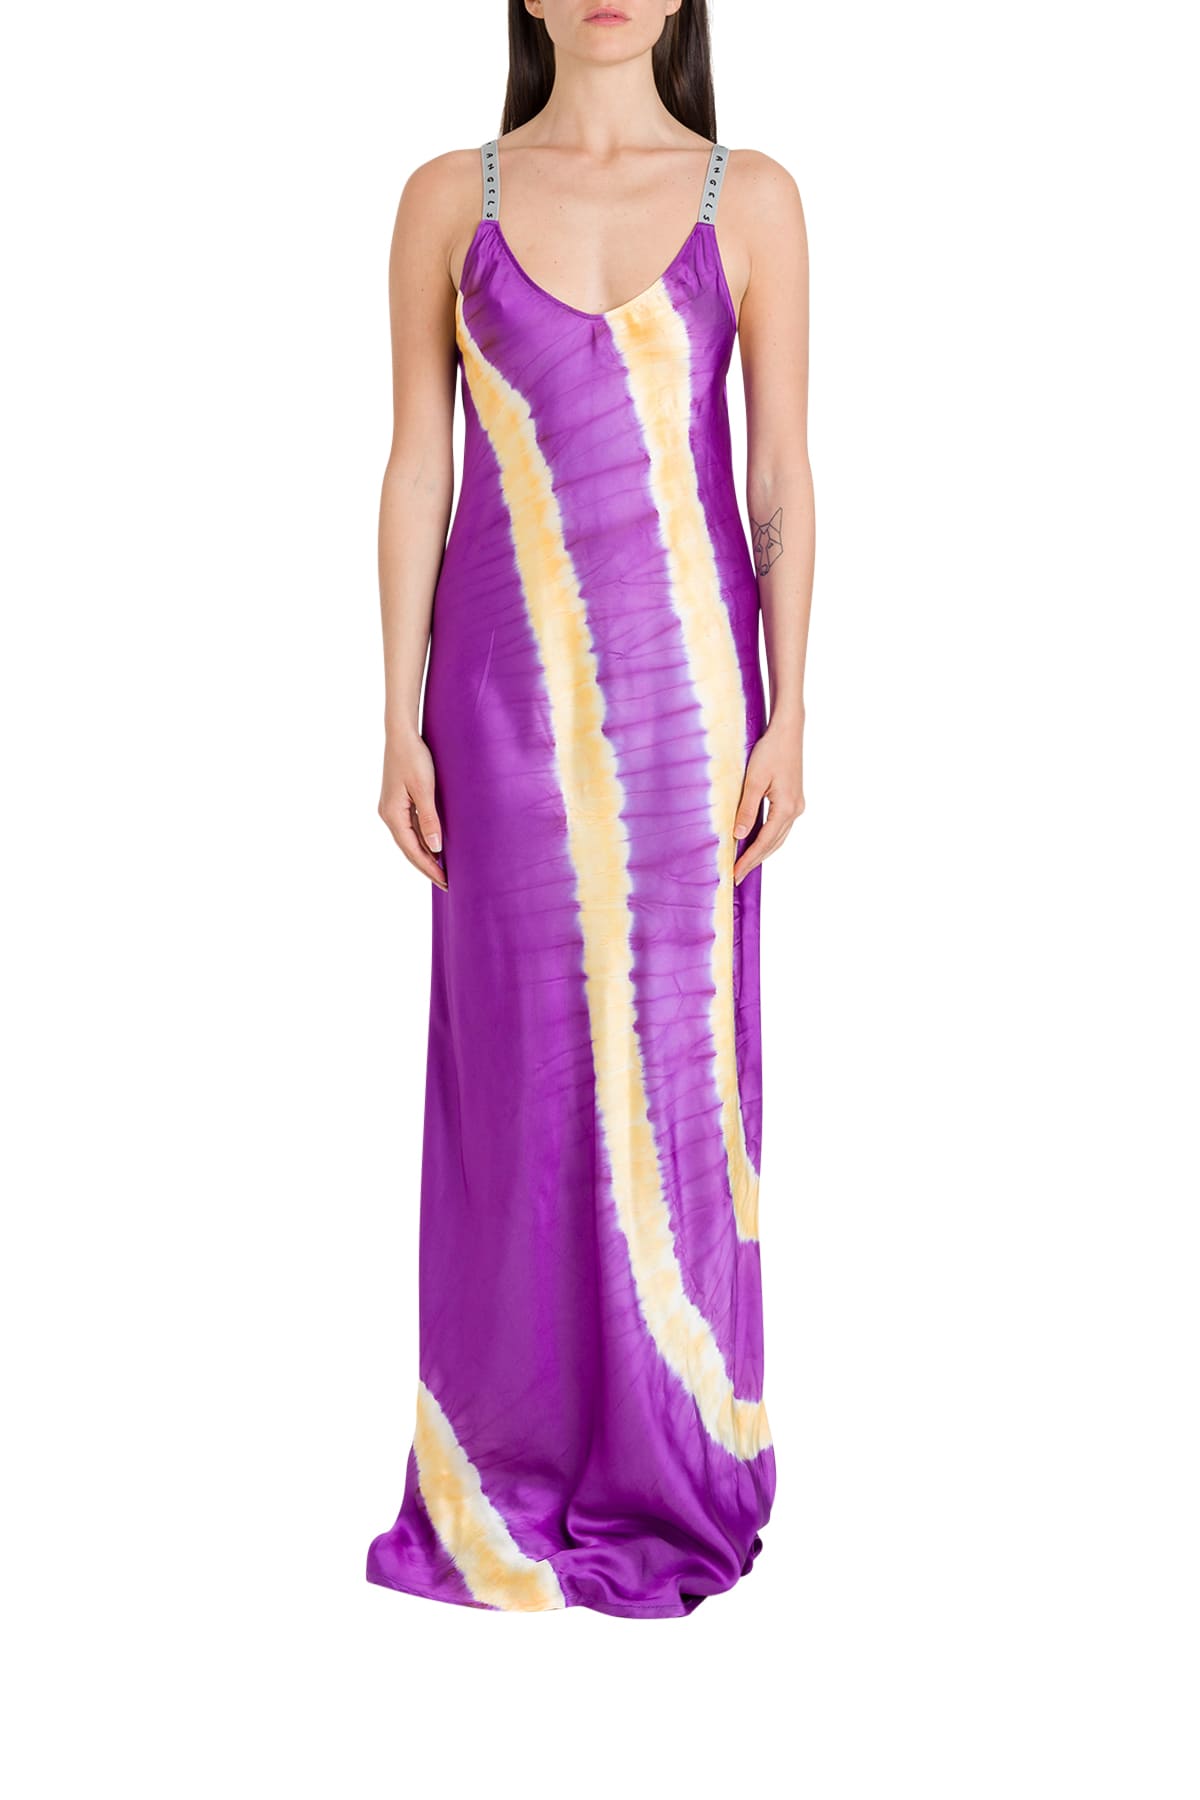 Palm Angels Tie-dye Printed Slip Dress